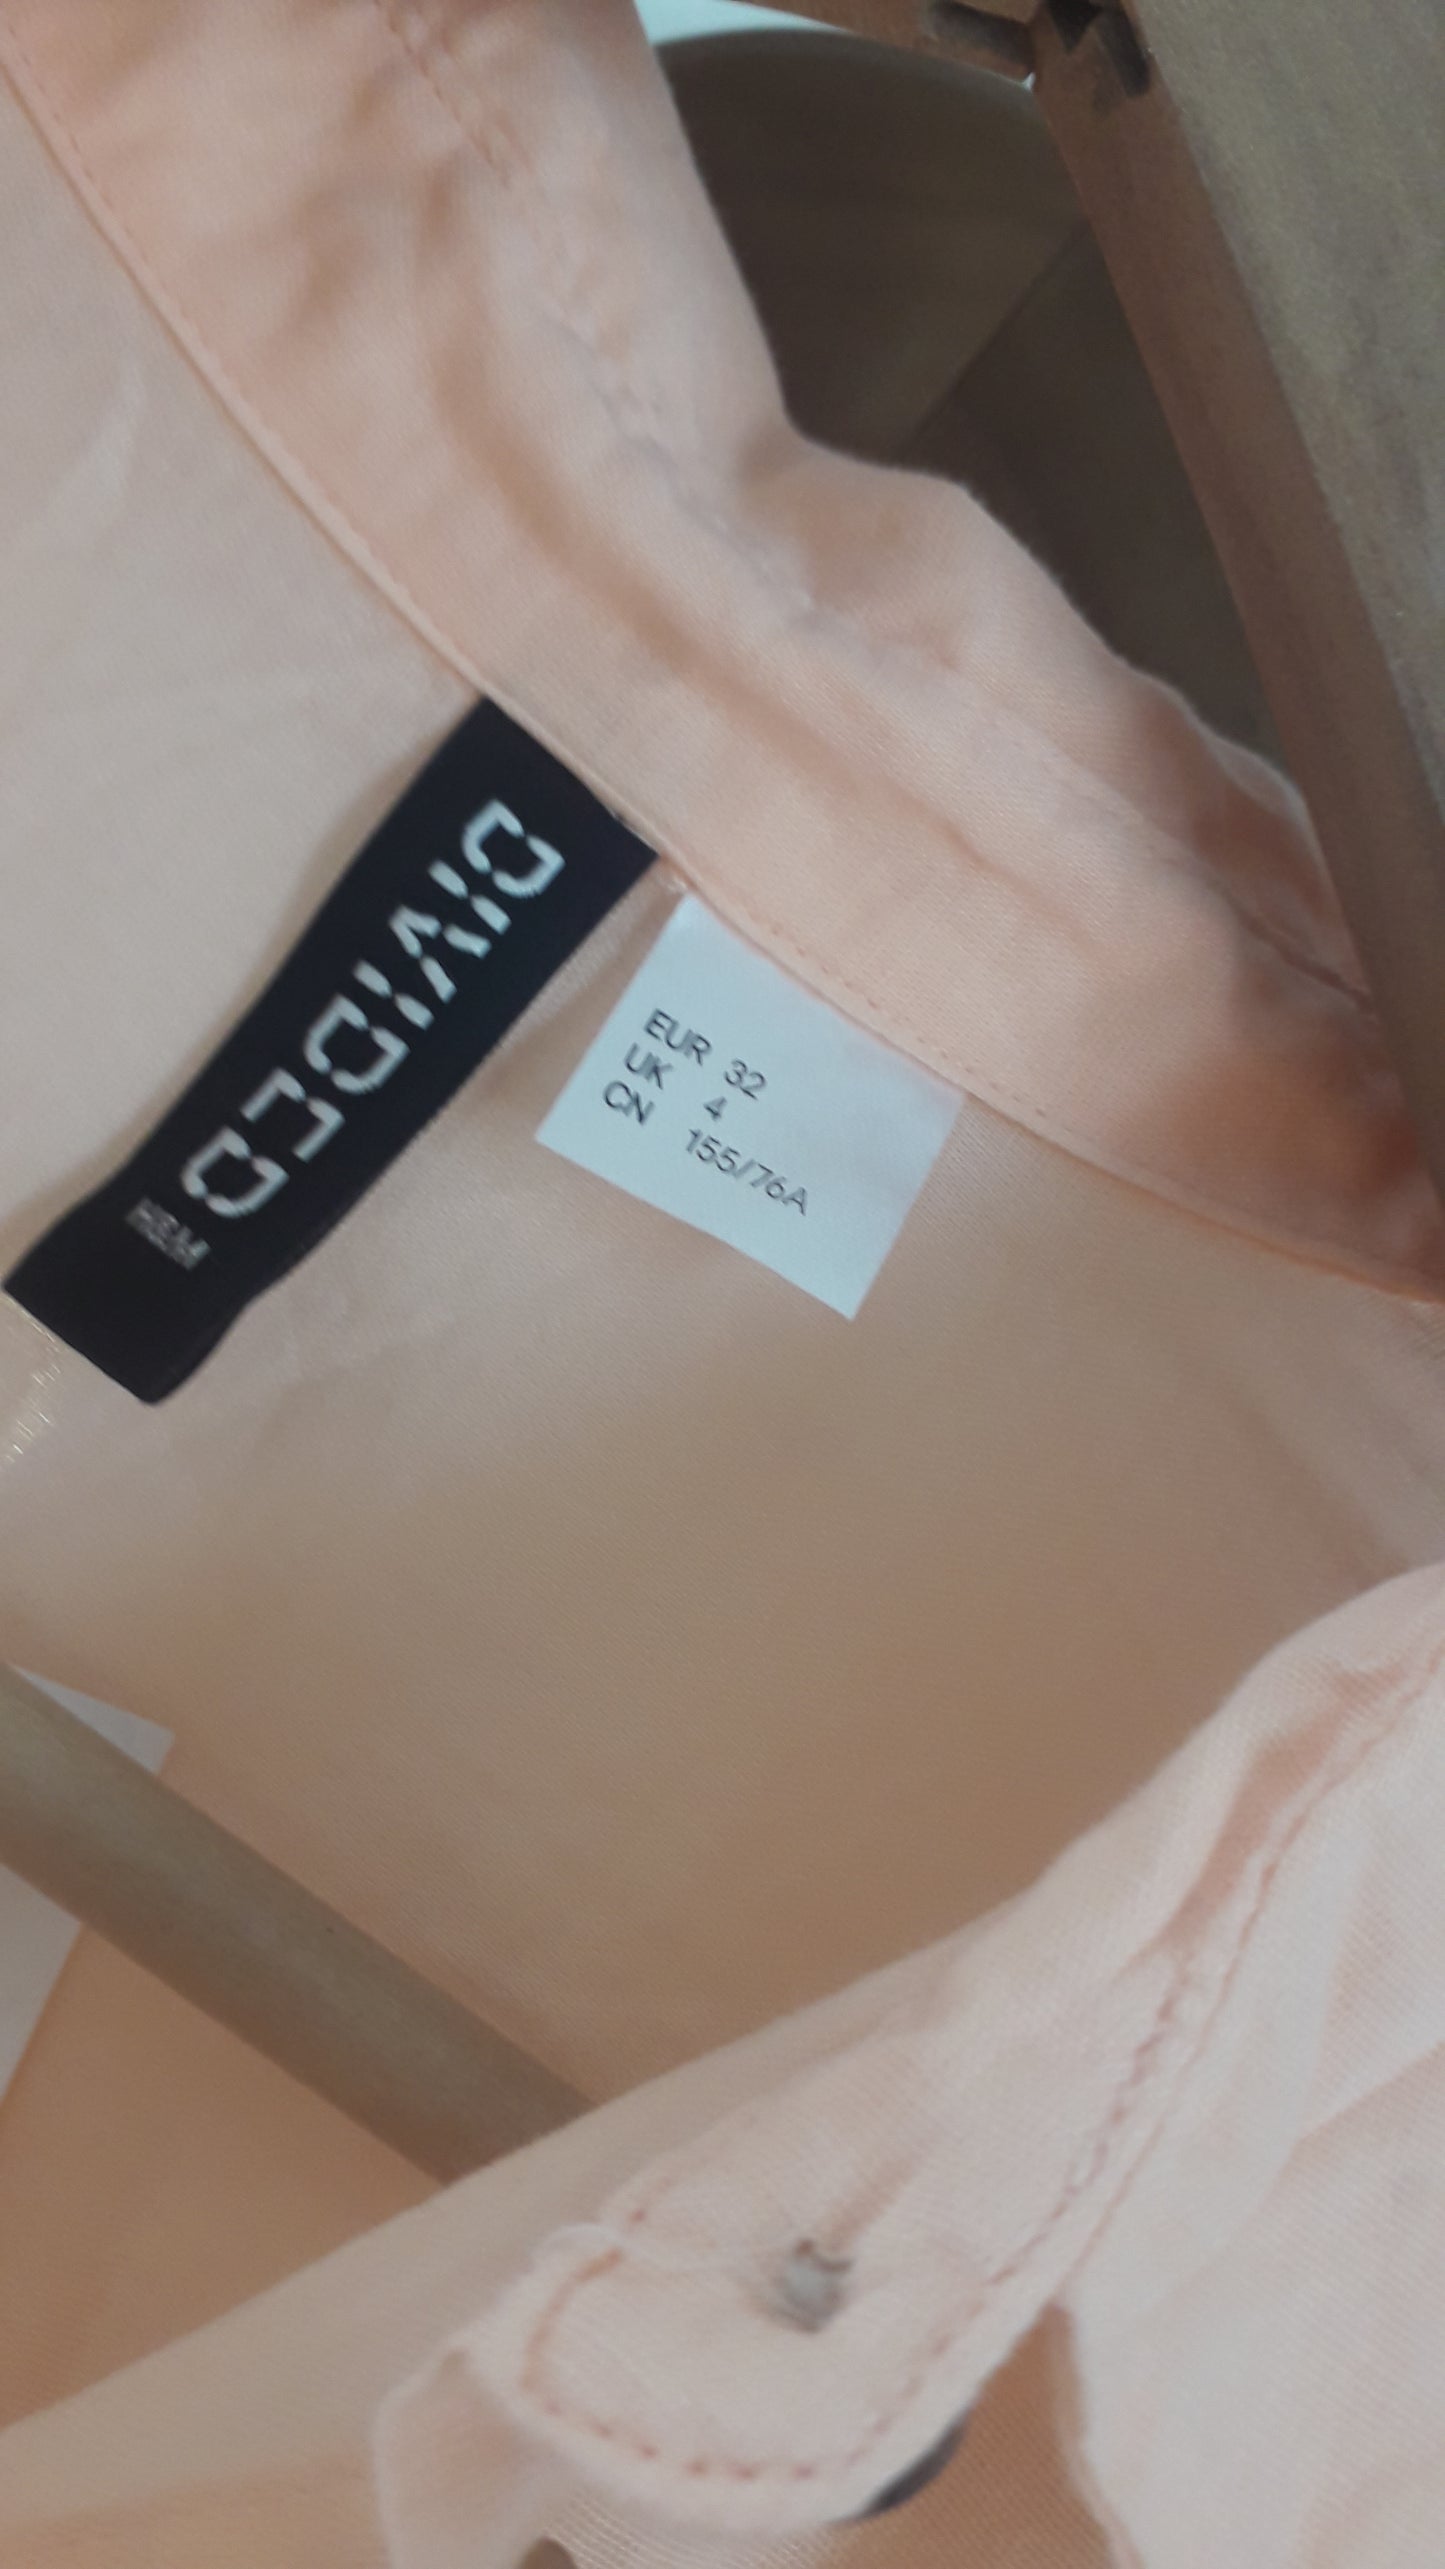 Neuve chemise abricot - H&M - 34